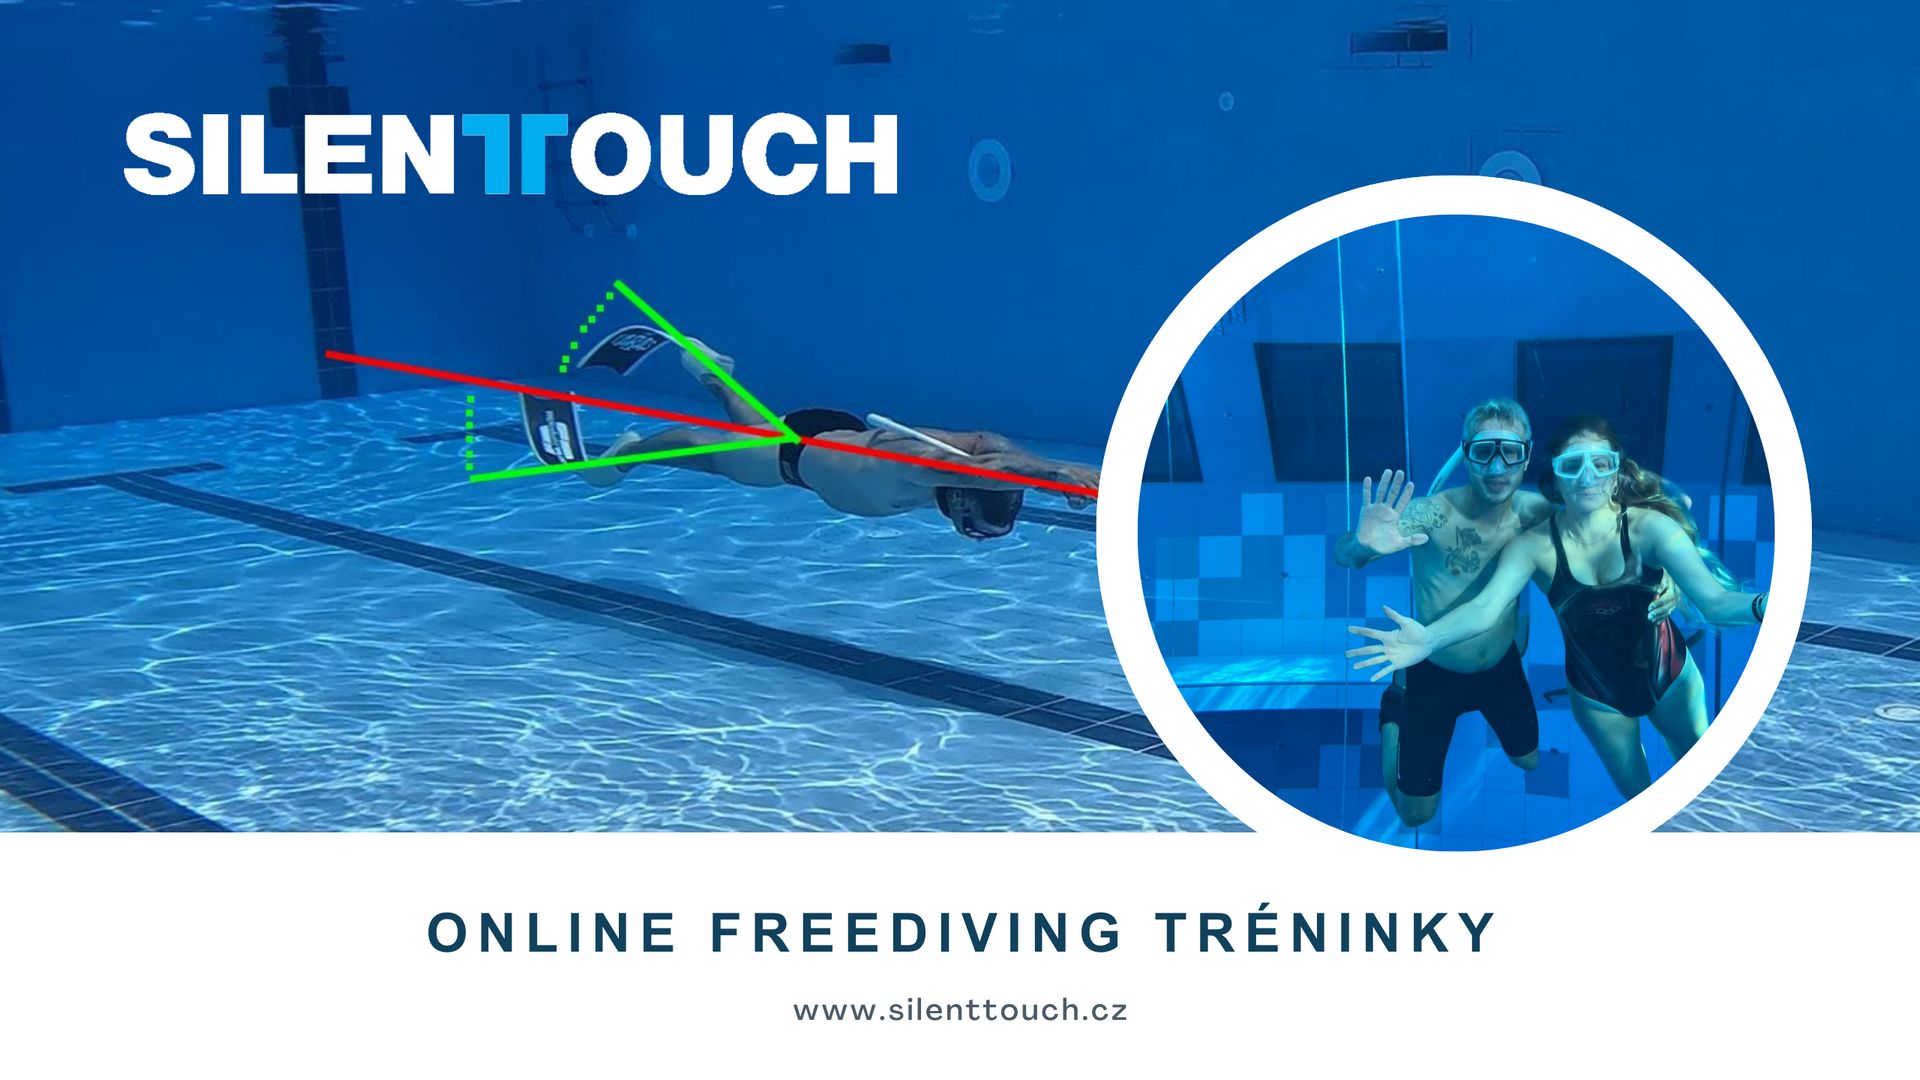 Online freediving trenink